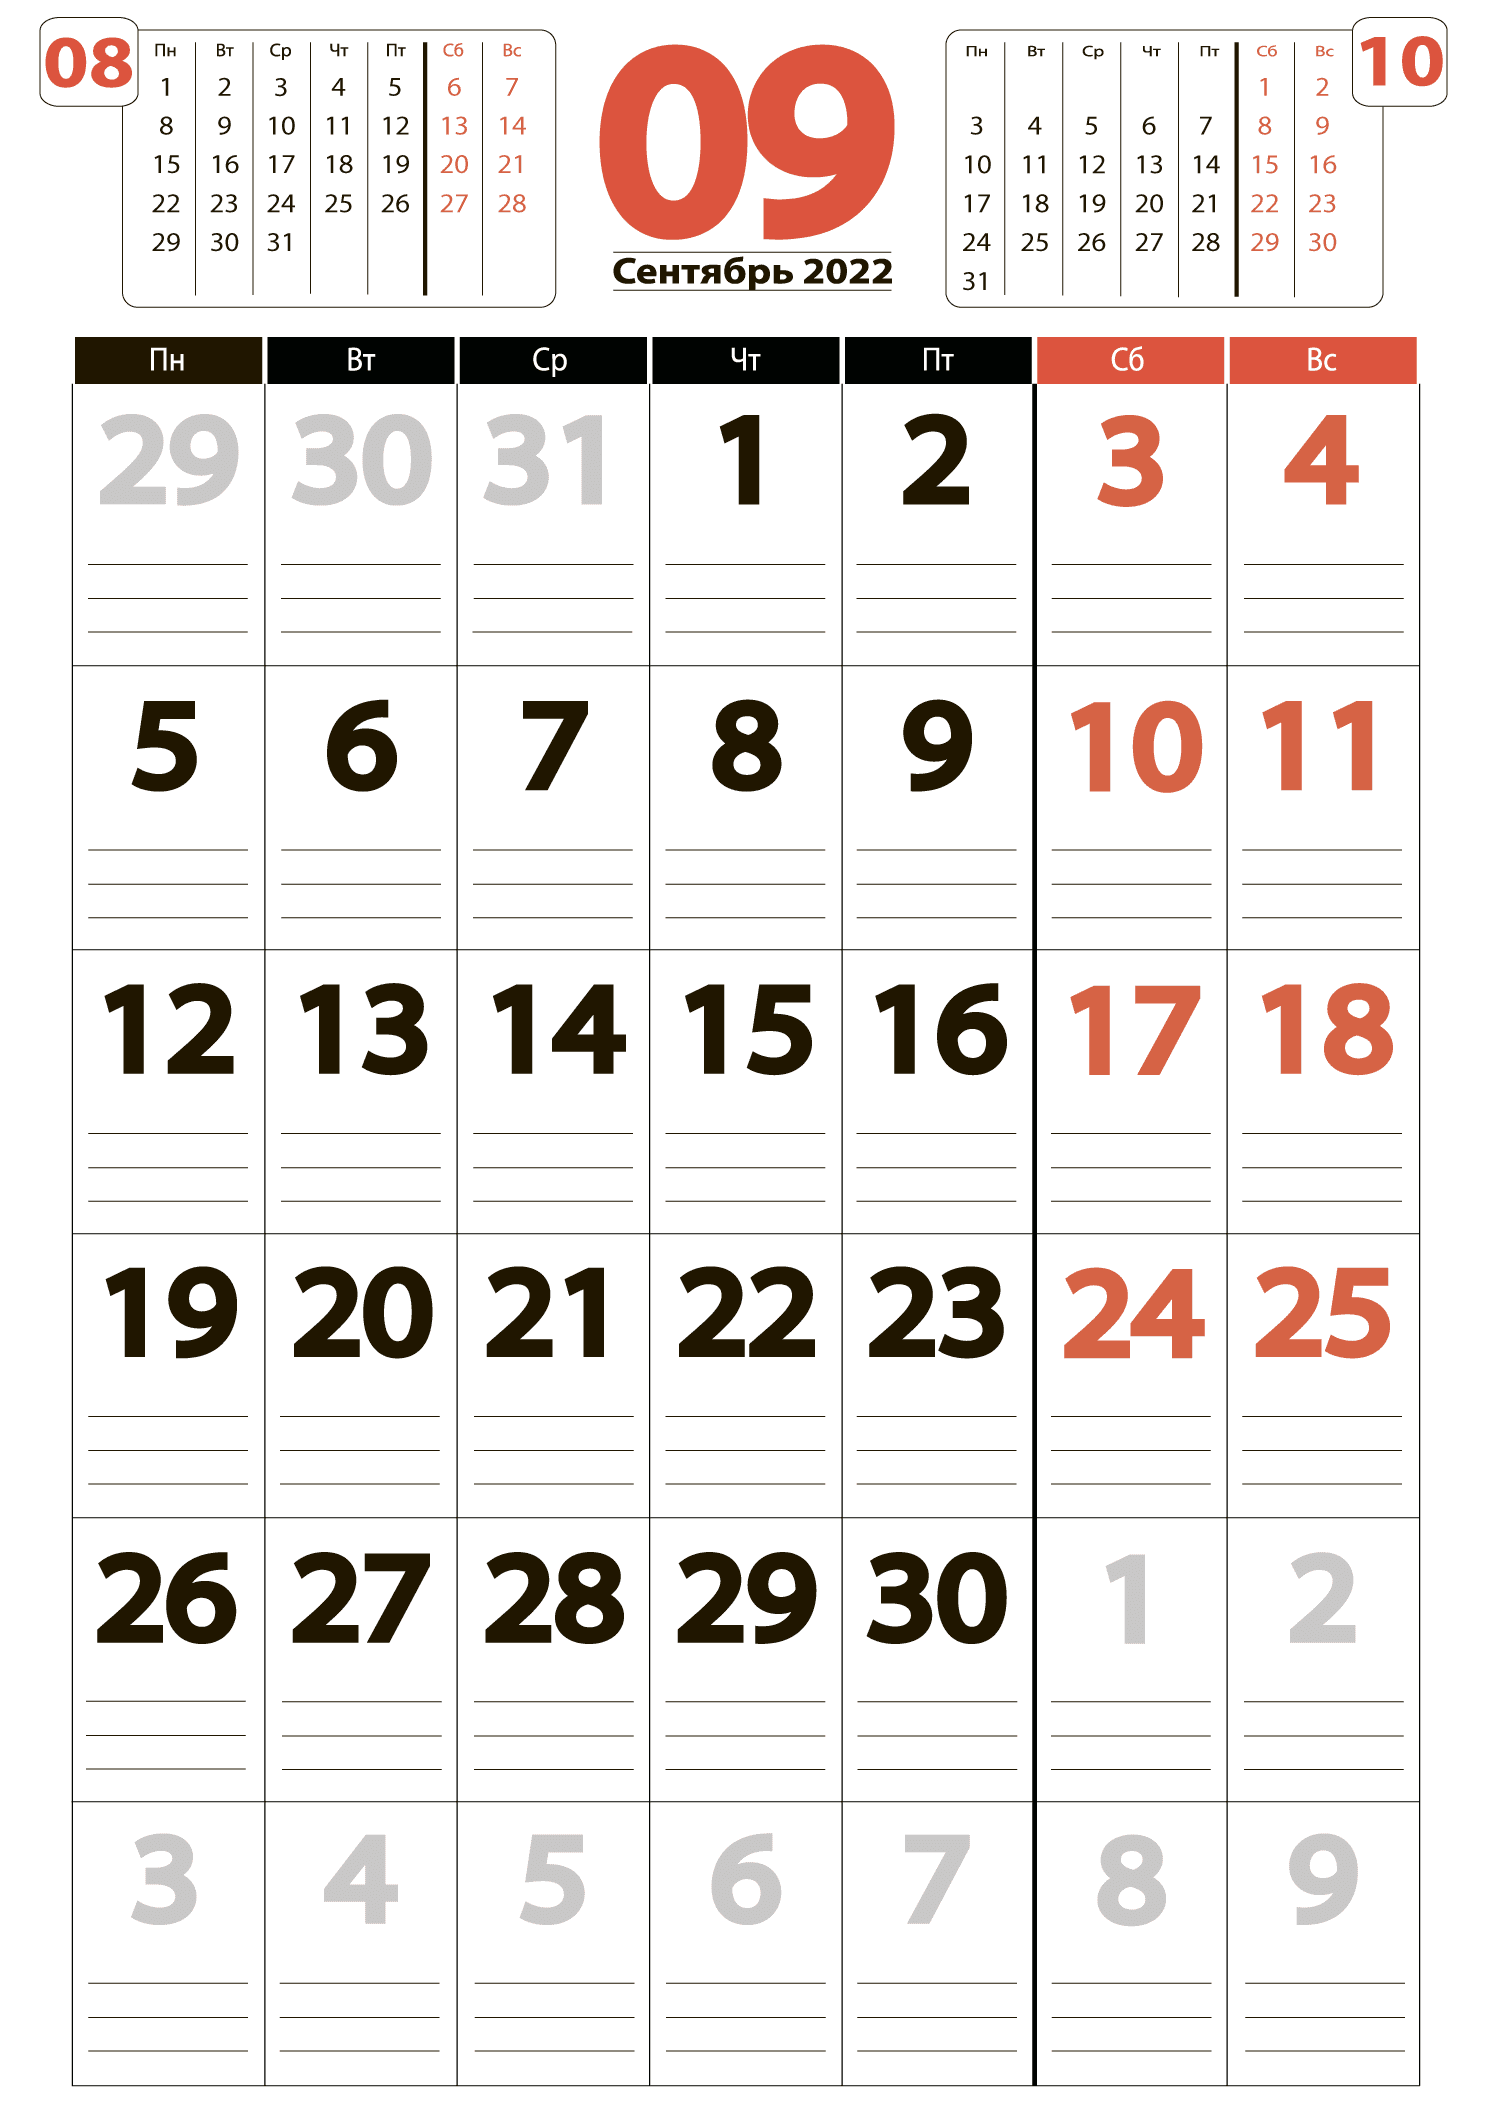 Печать крупного календаря на сентябрь 2022